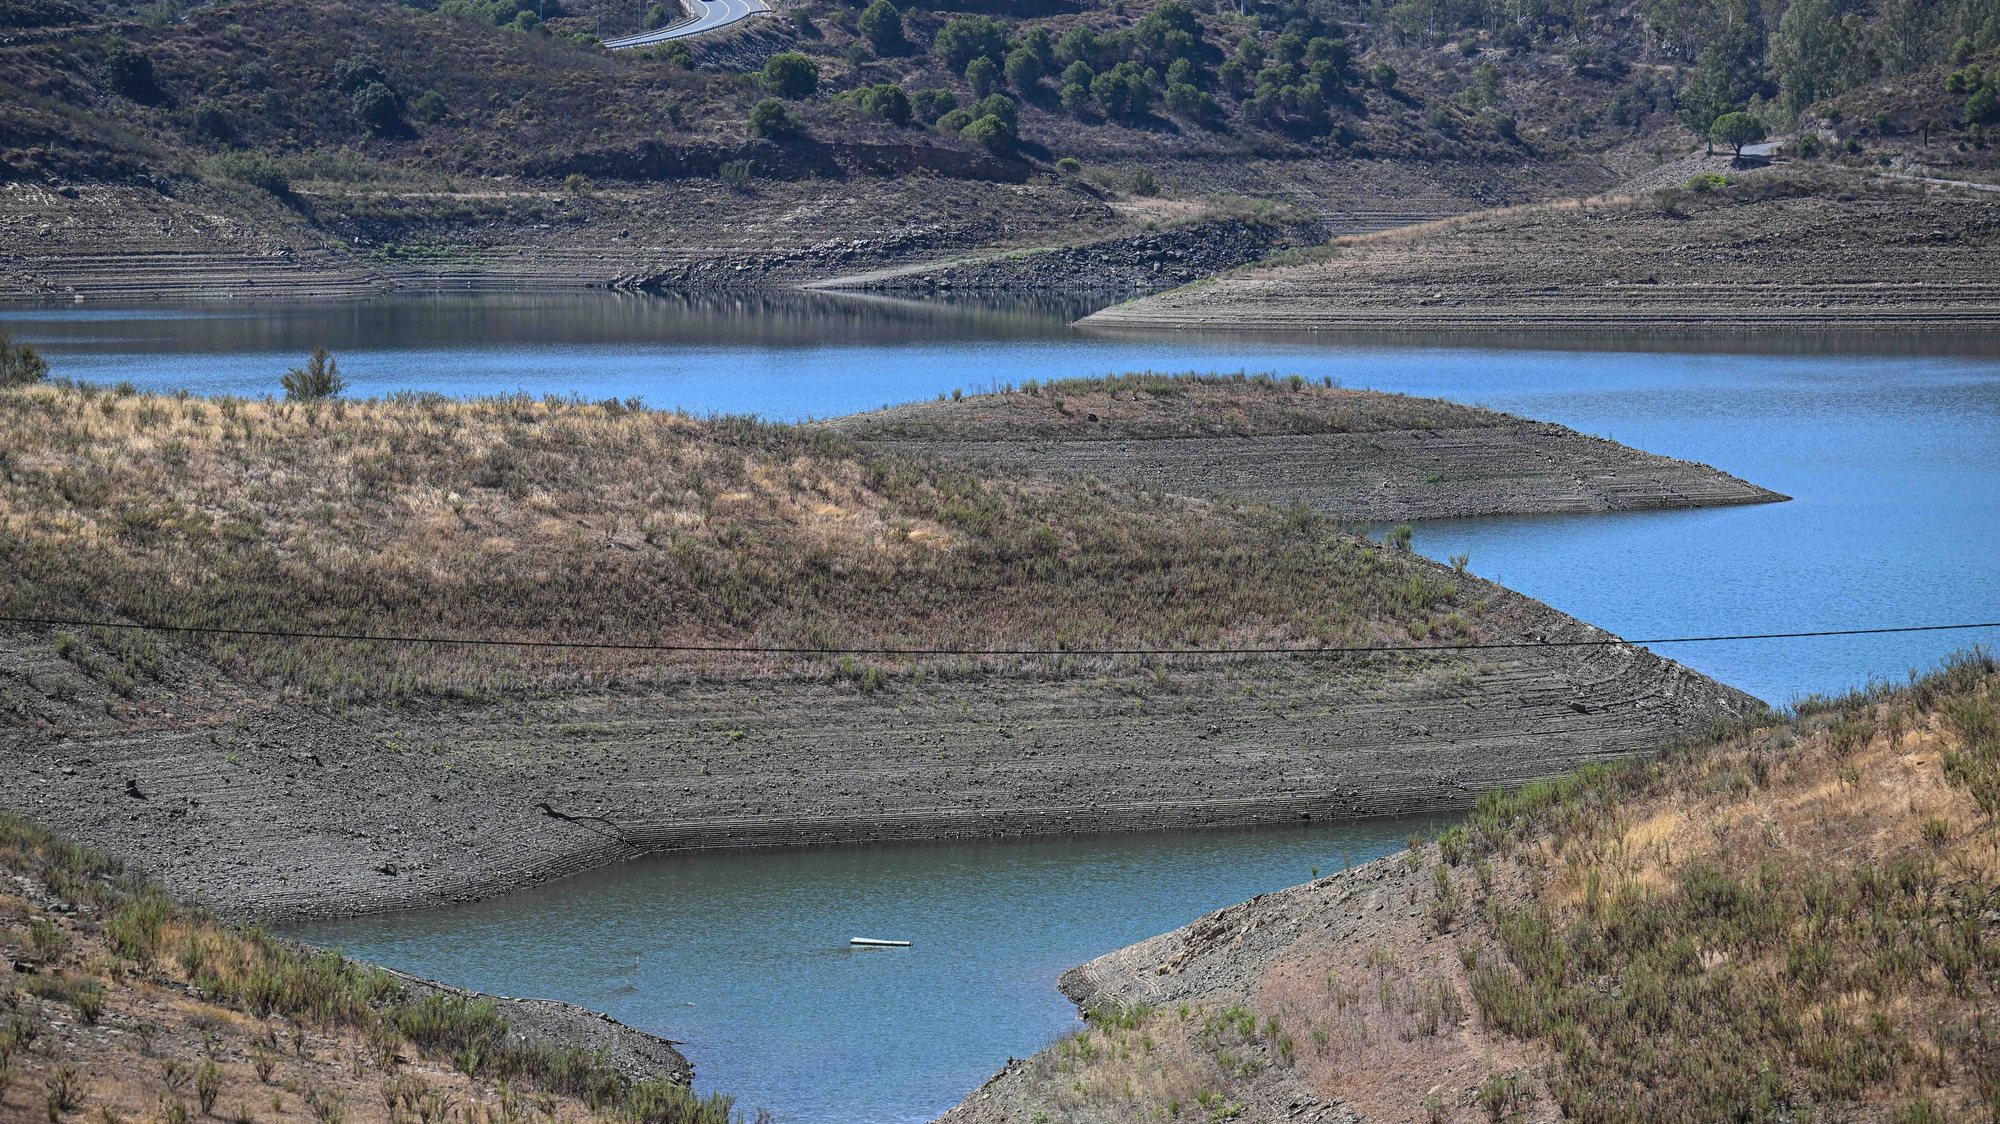 Barragem do Belhiche  com pouca água devido às consequências da seca que afeta o baixo Guadiana, Castro Marim, 11 de agosto de 2022. (ACOMPANHA TEXTO DE 12-08-22) LUÍS FORRA/LUSA